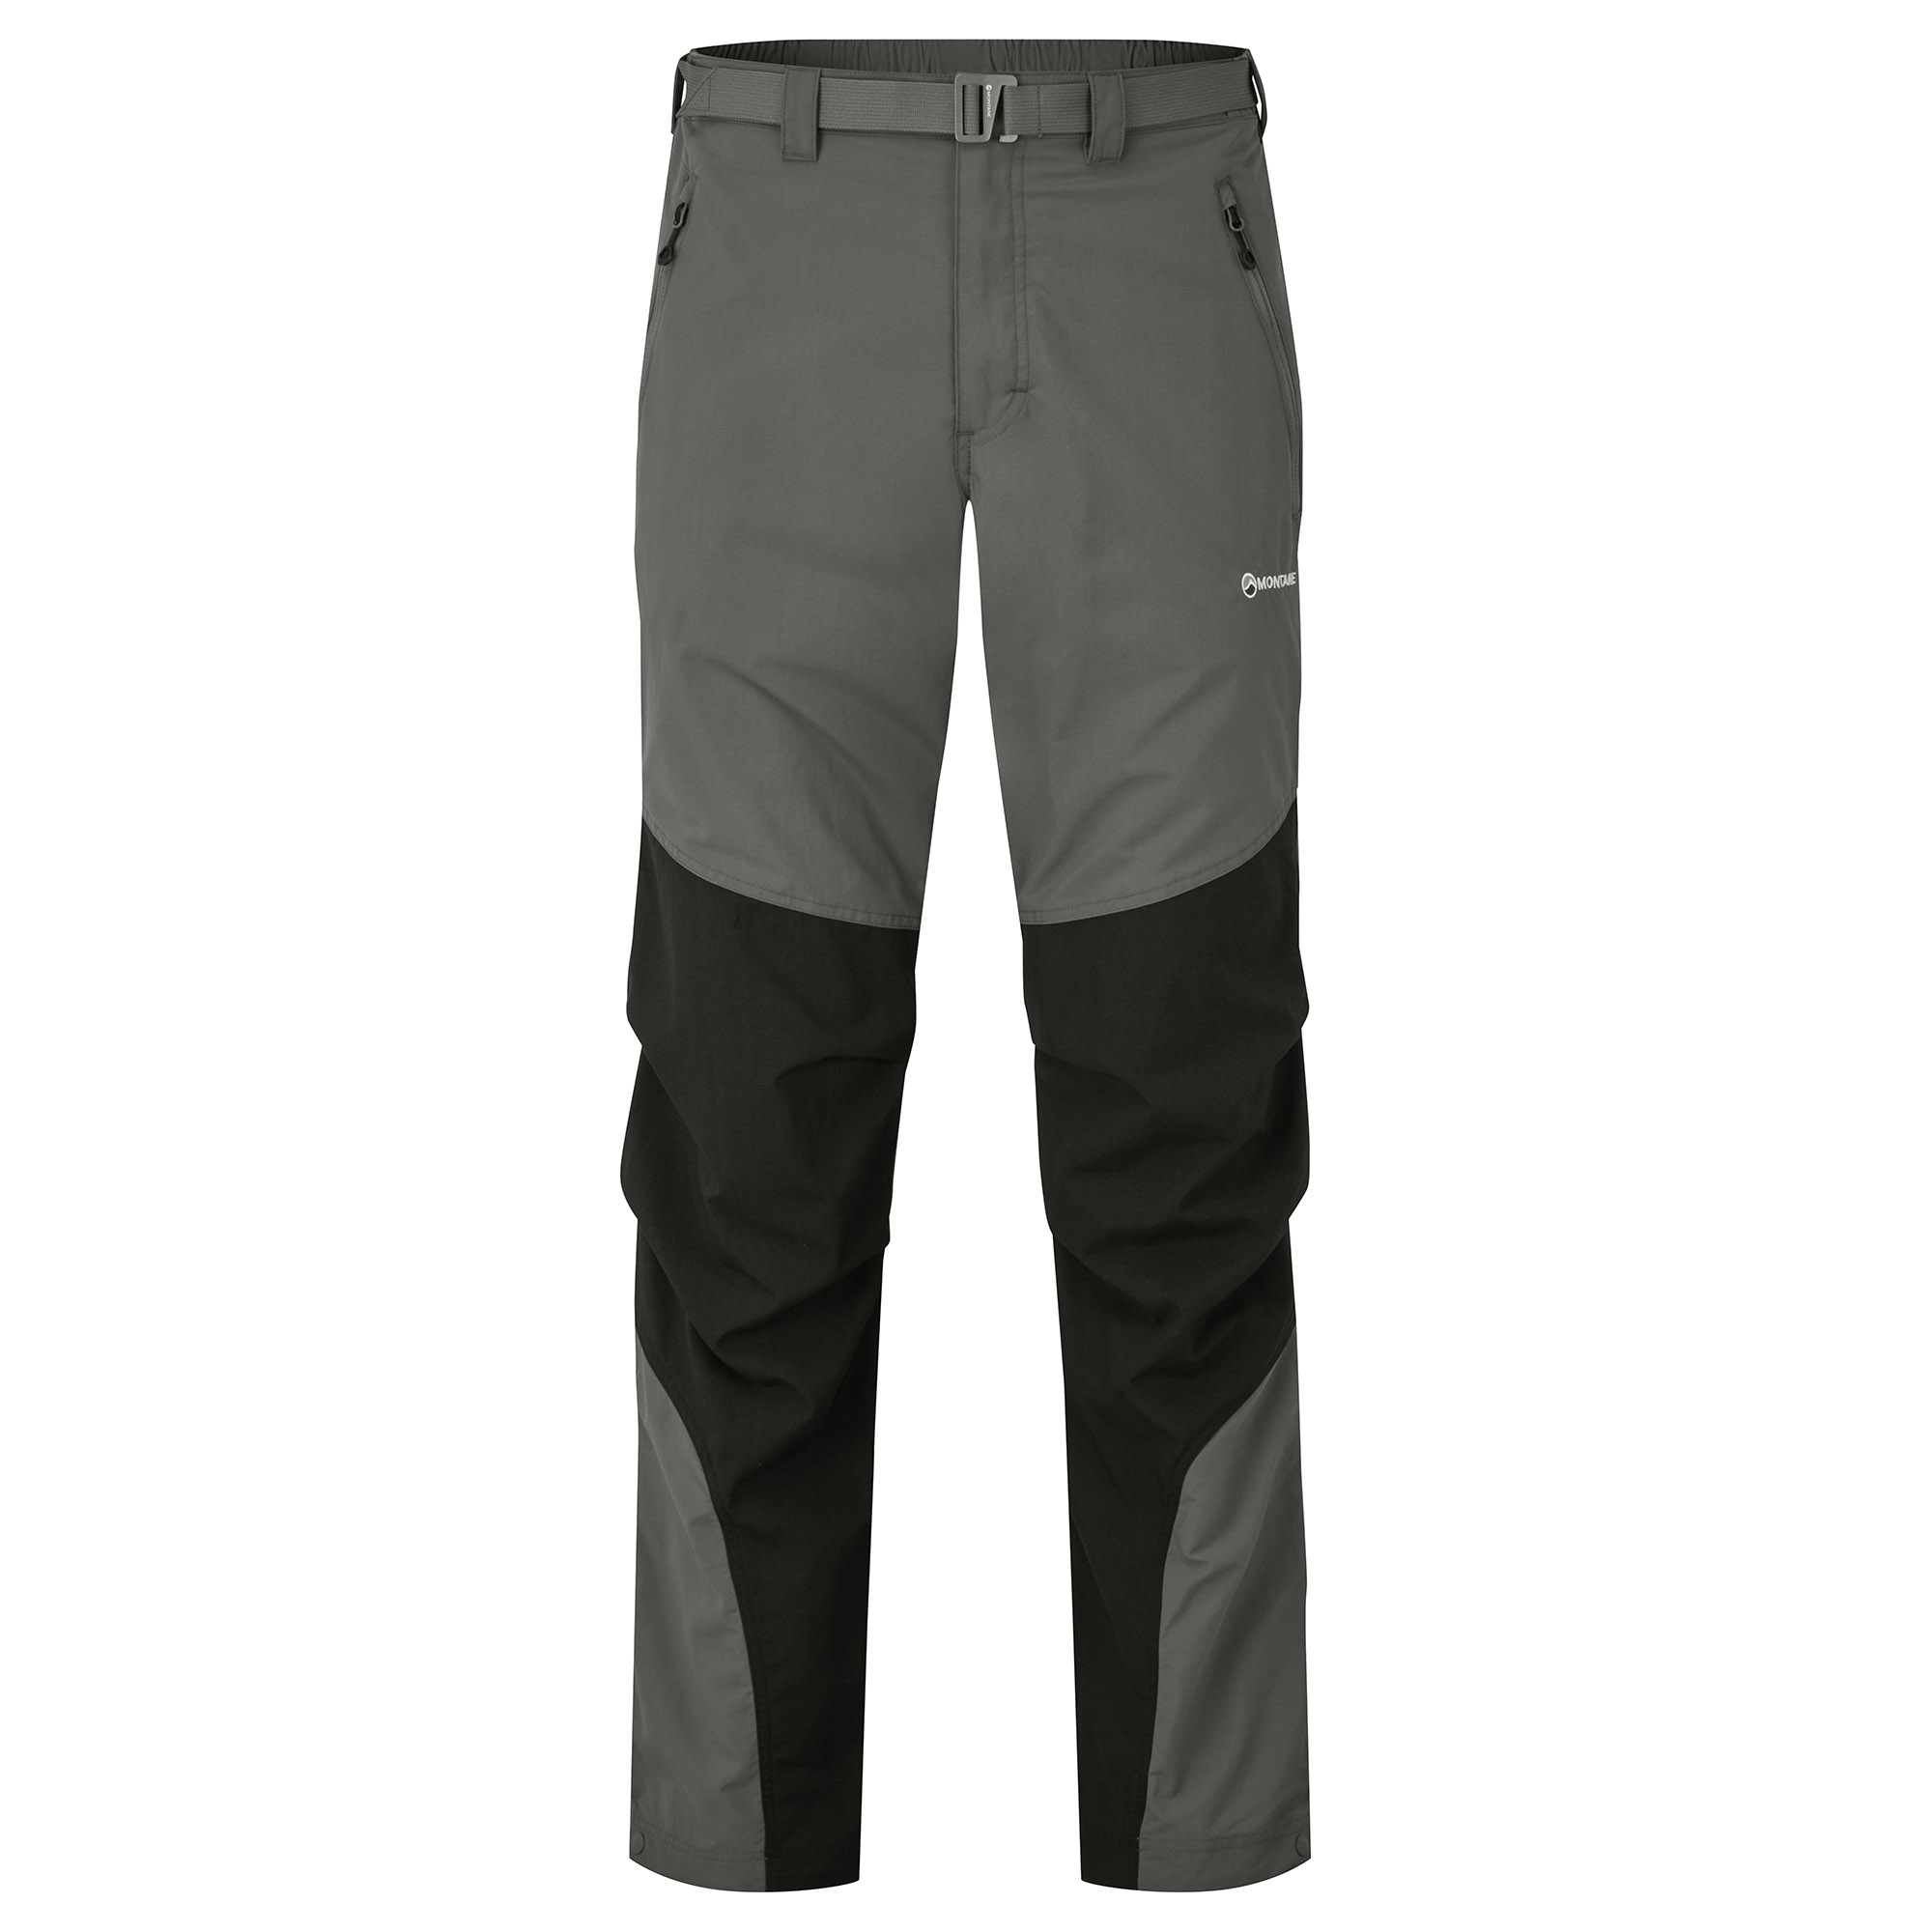 Montane pánské softshellové kalhoty Terra Pants - Zkrácené Nohavice Barva: graphite, Velikost: 30